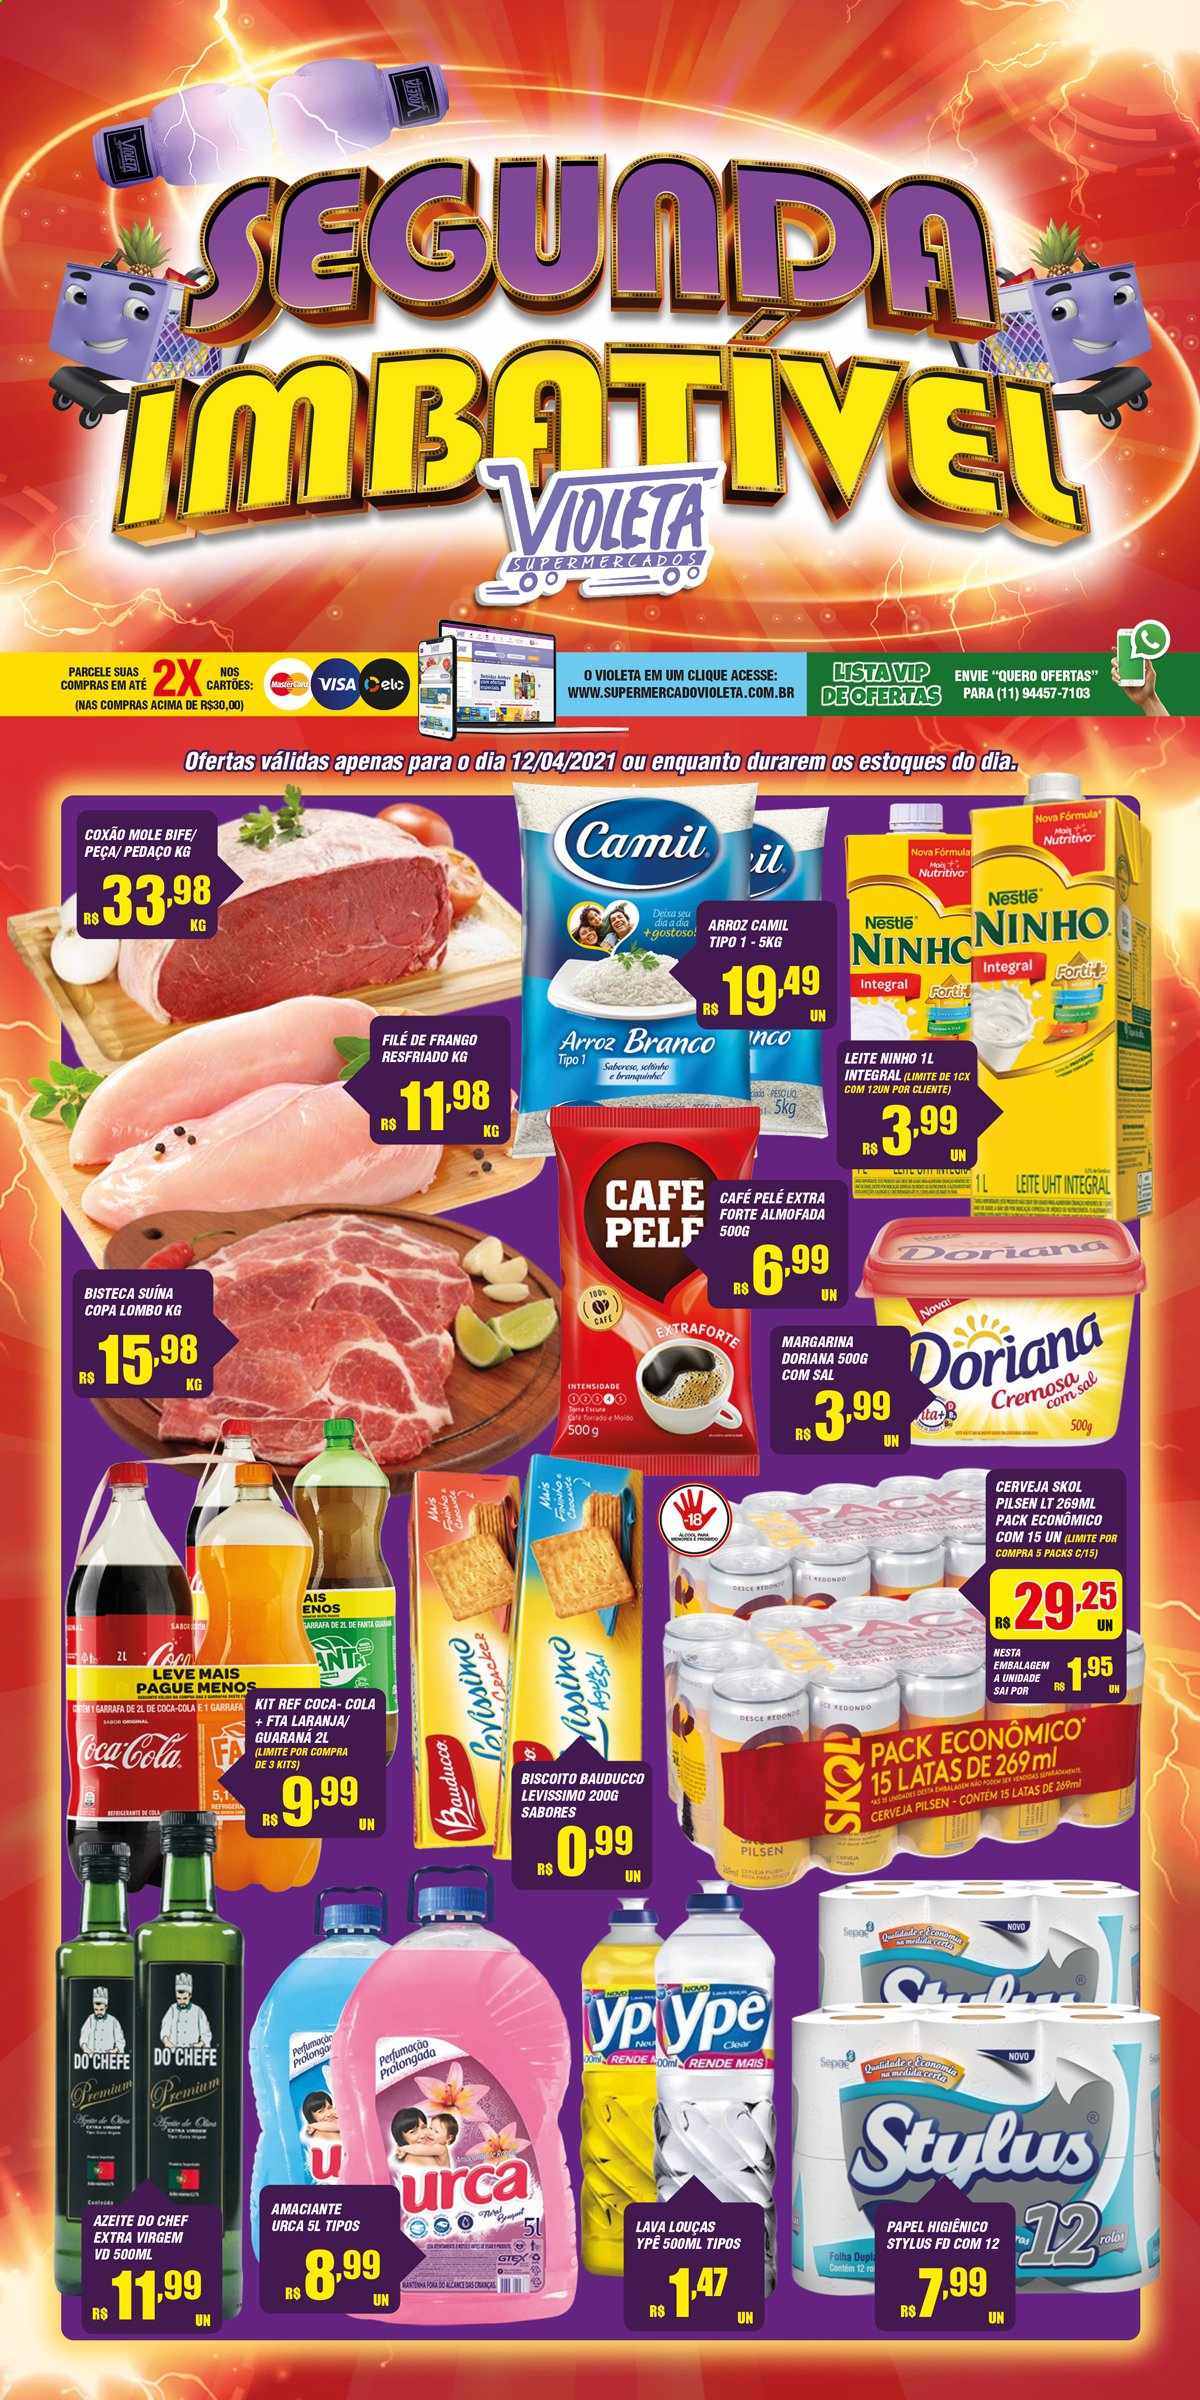 Encarte Supermercado Violeta  - 12.04.2021 - 12.04.2021.